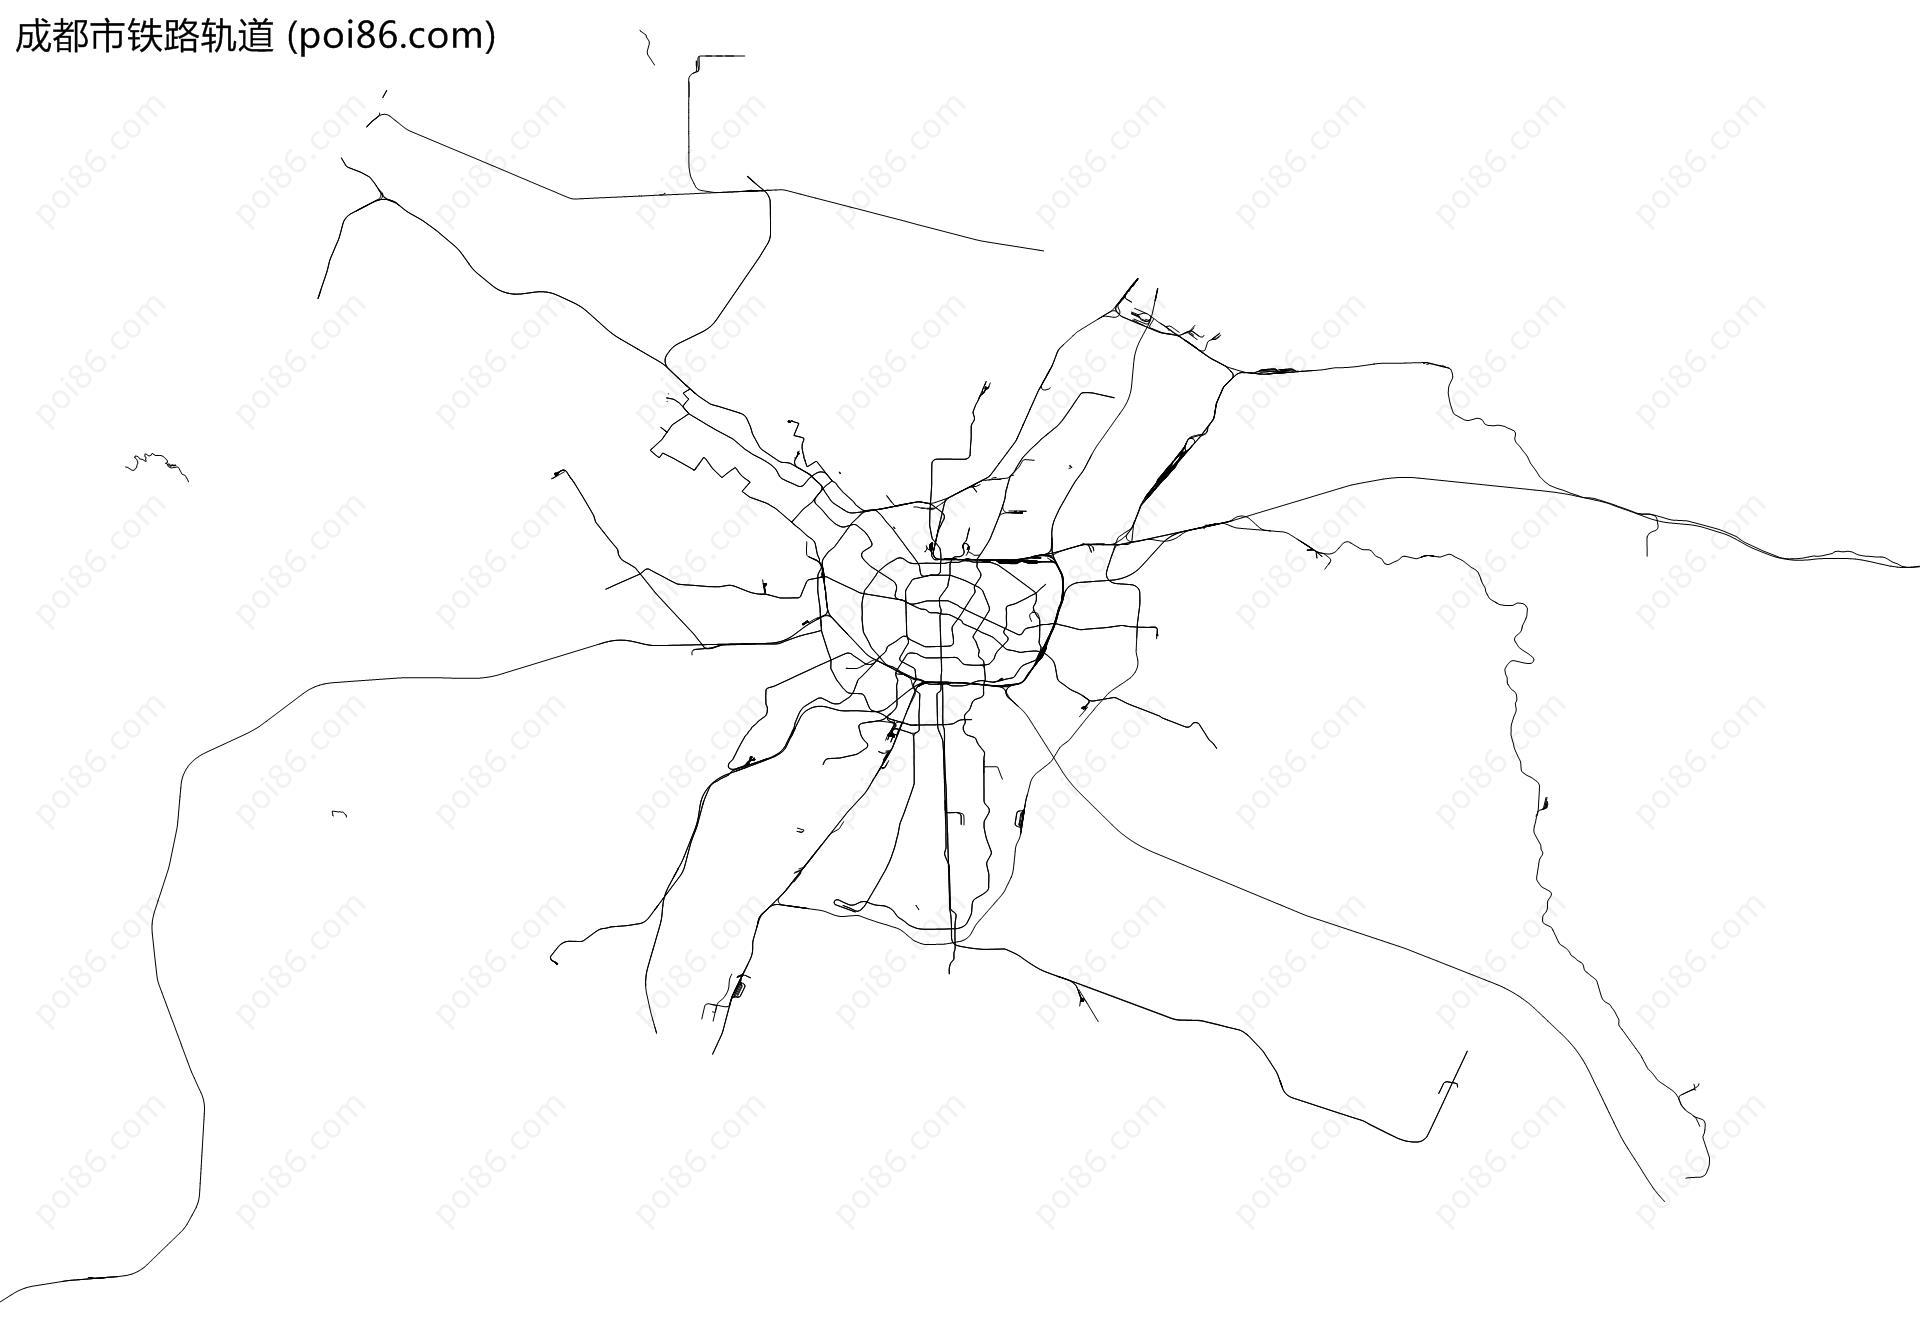 成都市铁路轨道地图